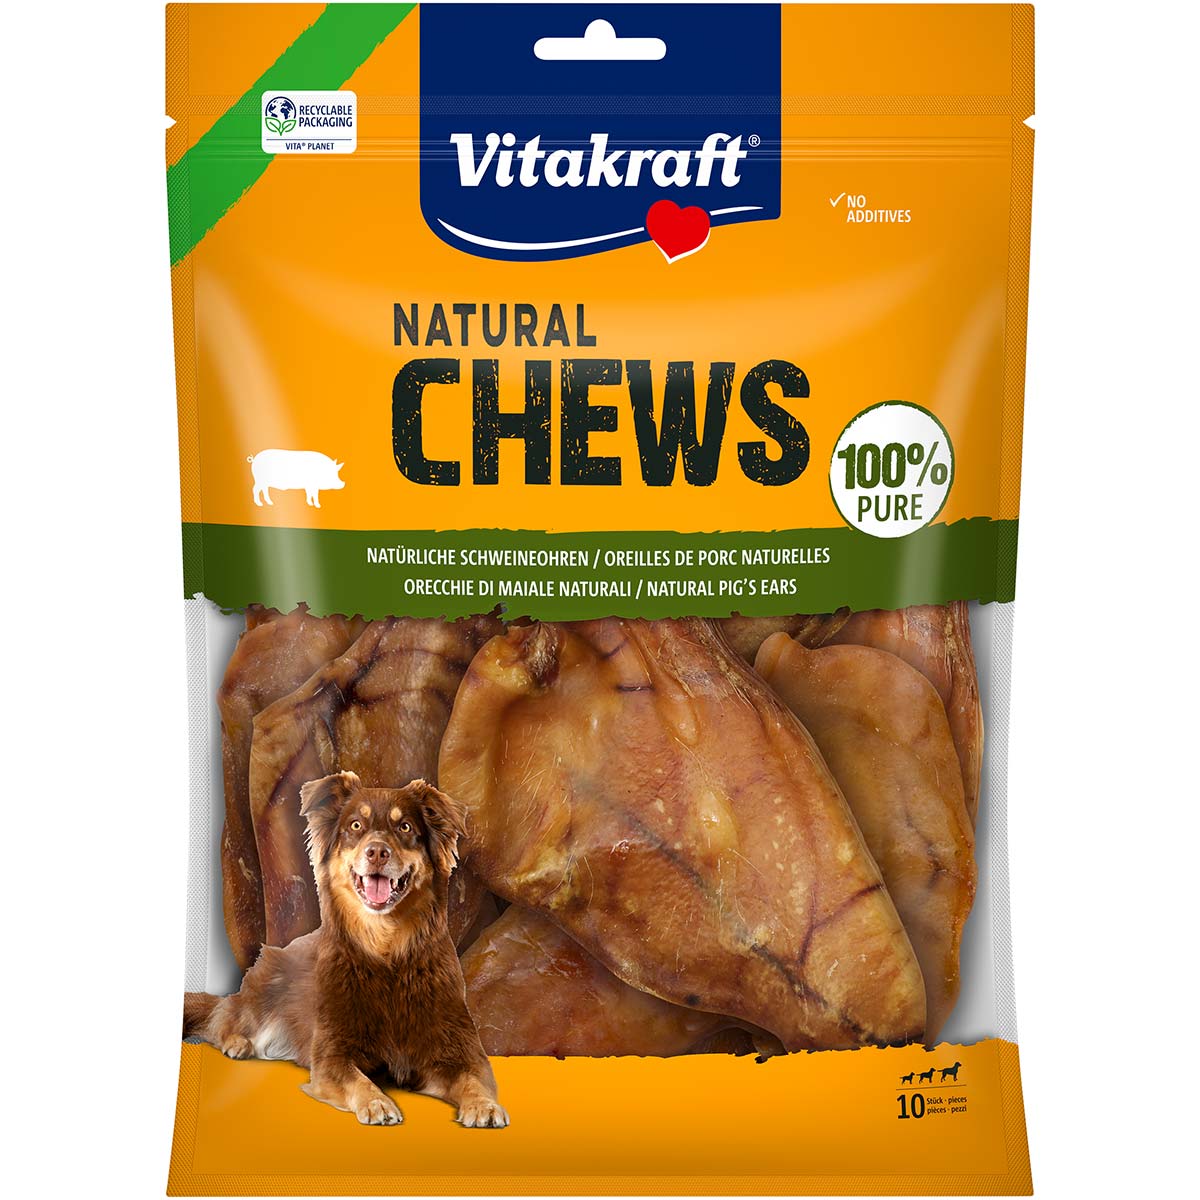 Vitakraft Chews pure Schweineohren 10 Stück